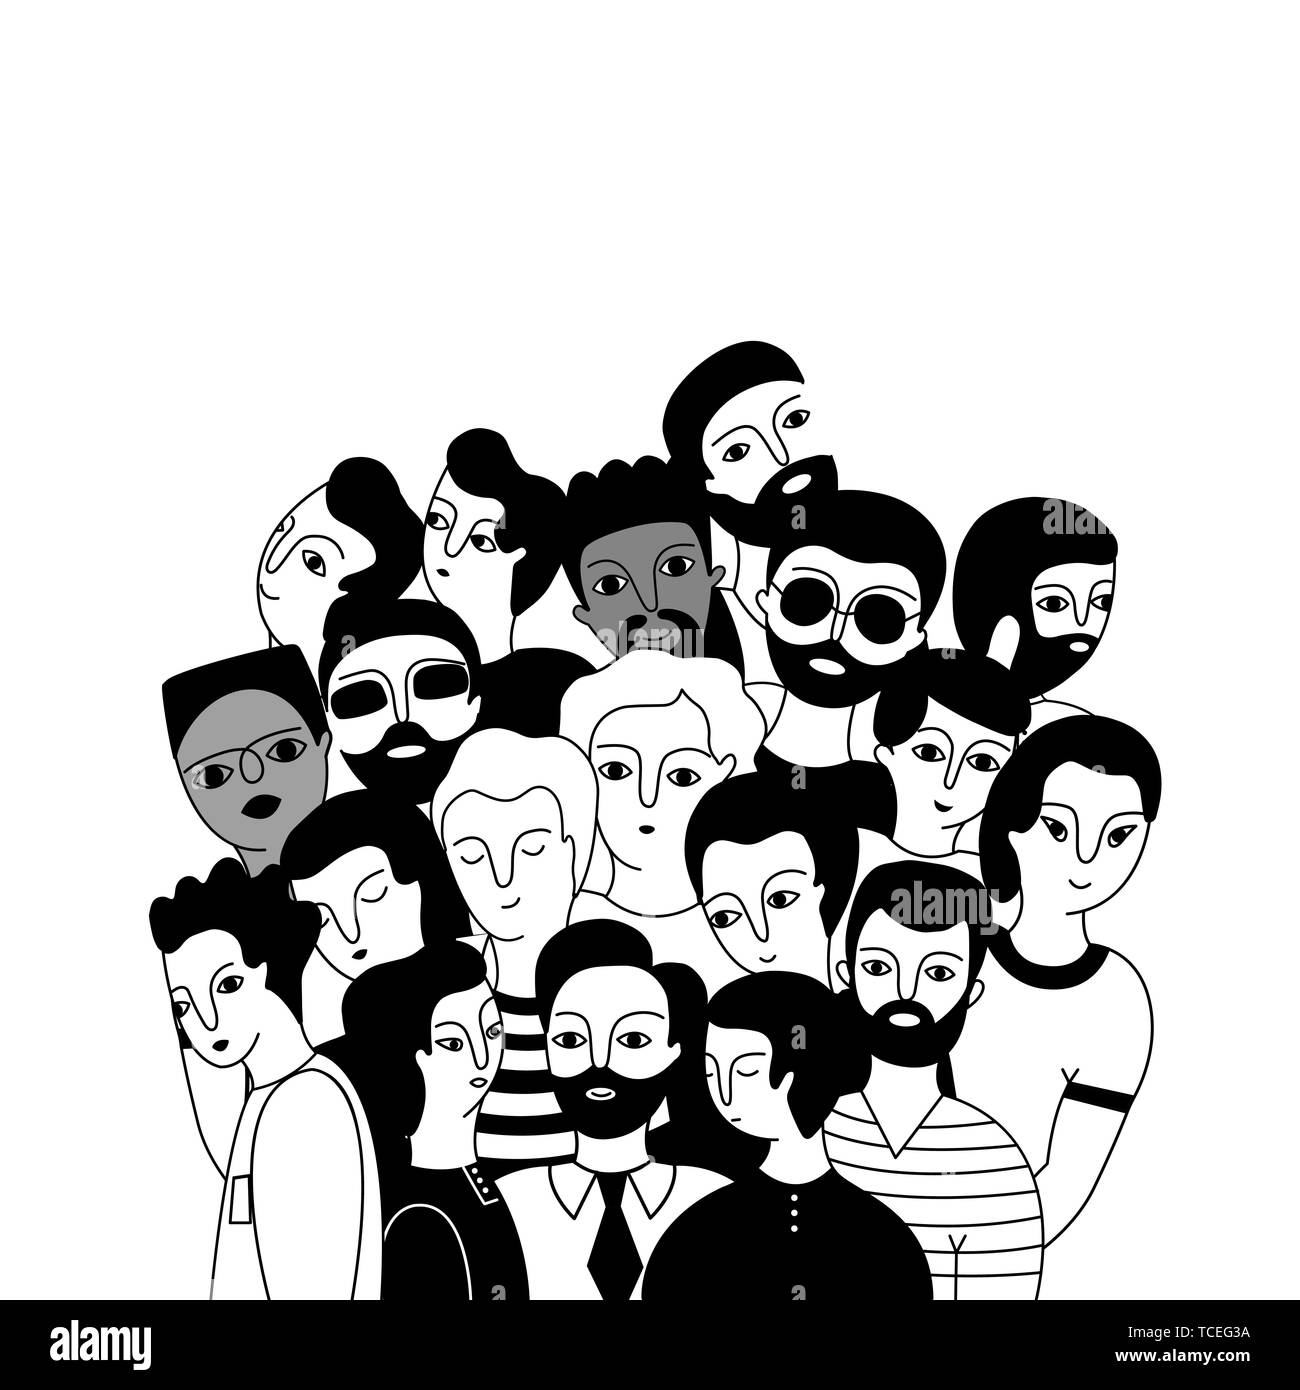 Eine multikulturelle Gruppe von Männern (Muslim, Asiatischen, Europäischen) auf einem weißen Hintergrund. Soziale Vielfalt. Doodle cartoon Vector Illustration. Stock Vektor